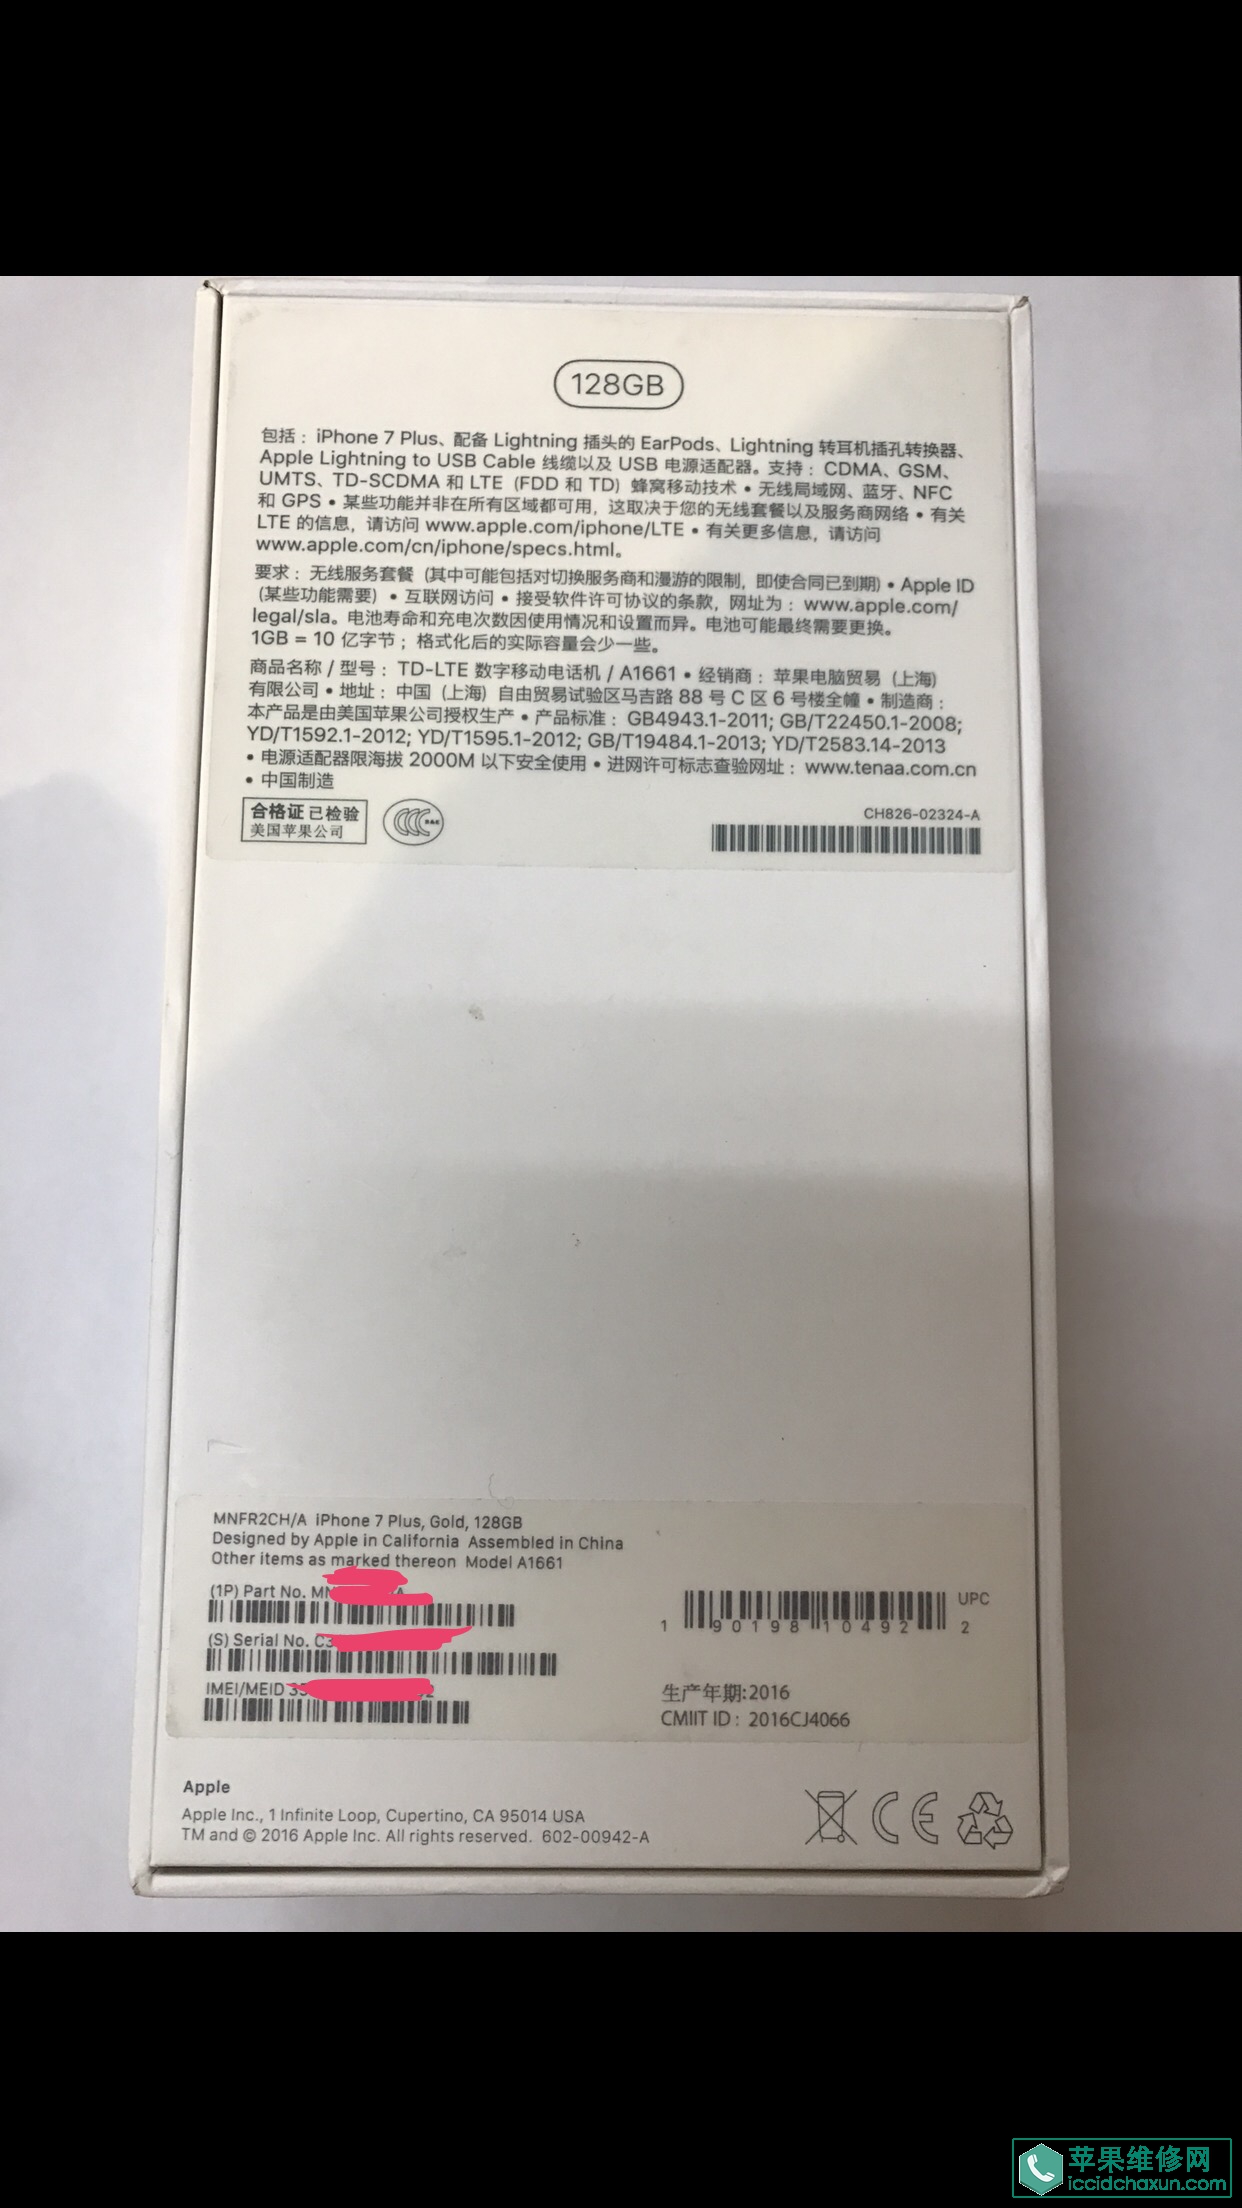 关于惠州百邦苹果维修店协助维修换机的投诉